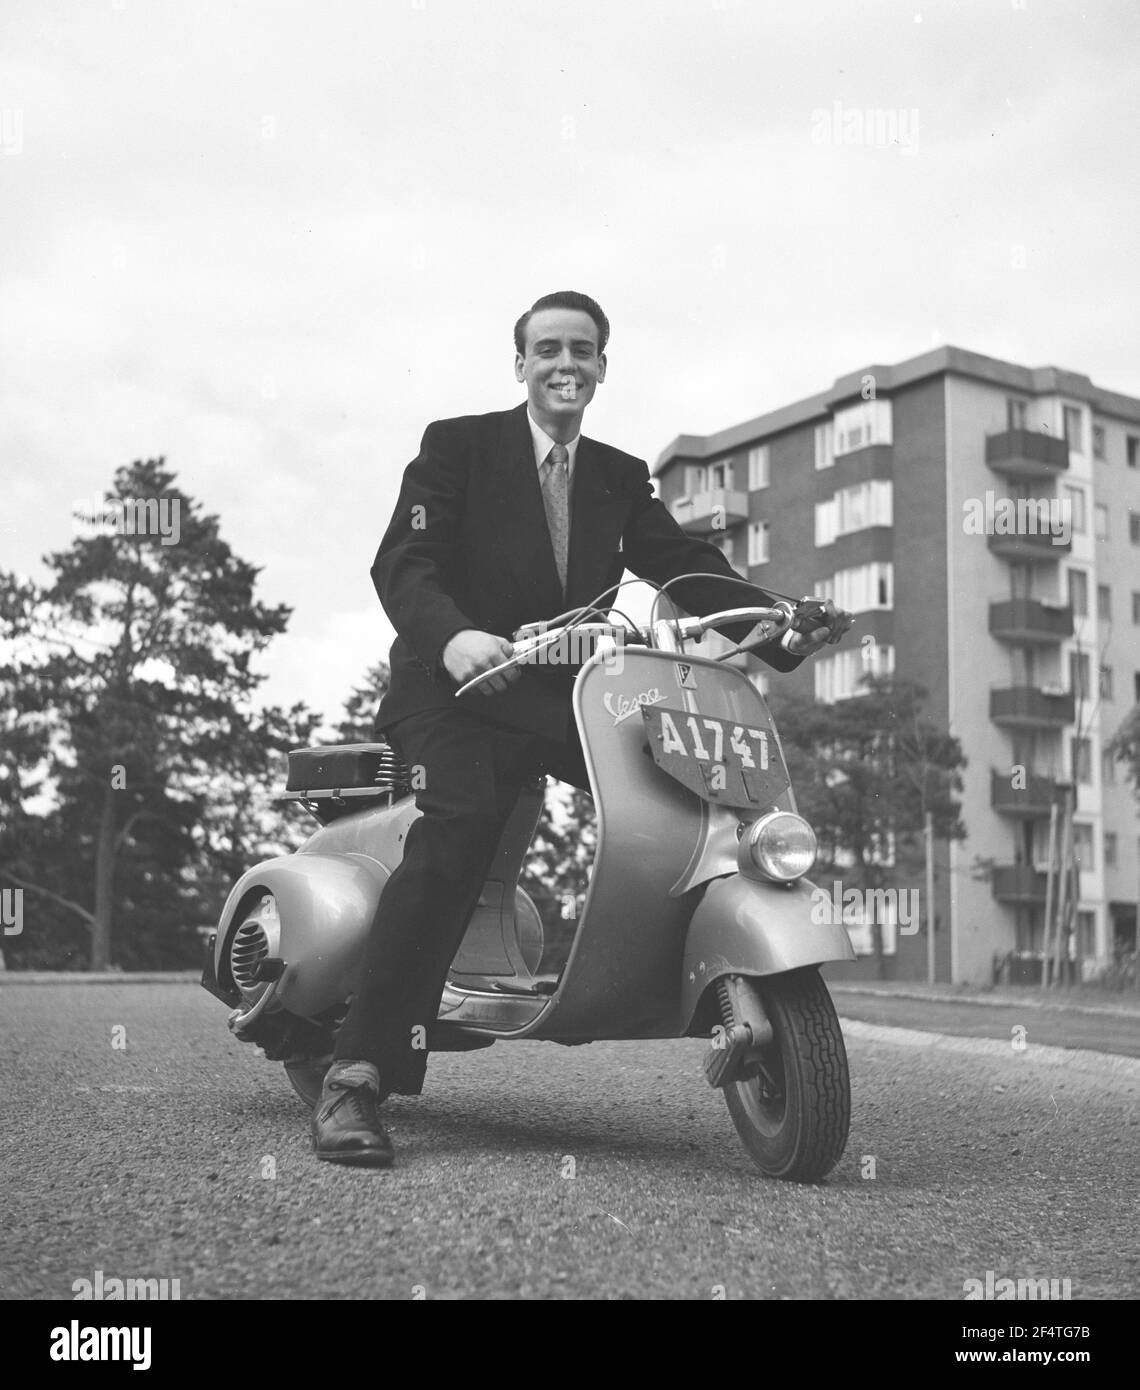 Vespa. Une marque italienne de scooter fabriqué par Piaggio. Le 23 avril 1946, Piaggio & C. S.p.A. a déposé un brevet pour "un cycle moteur avec un complexe rationnel d'organes et d'éléments avec corps combiné avec les garde-boue et le capot couvrant toutes les pièces mécaniques". Peu de temps après, la Vespa a fait sa première apparition publique. Il est Henry Hasso, fils de l'actrice signe Hasso en juillet 1952. Banque D'Images